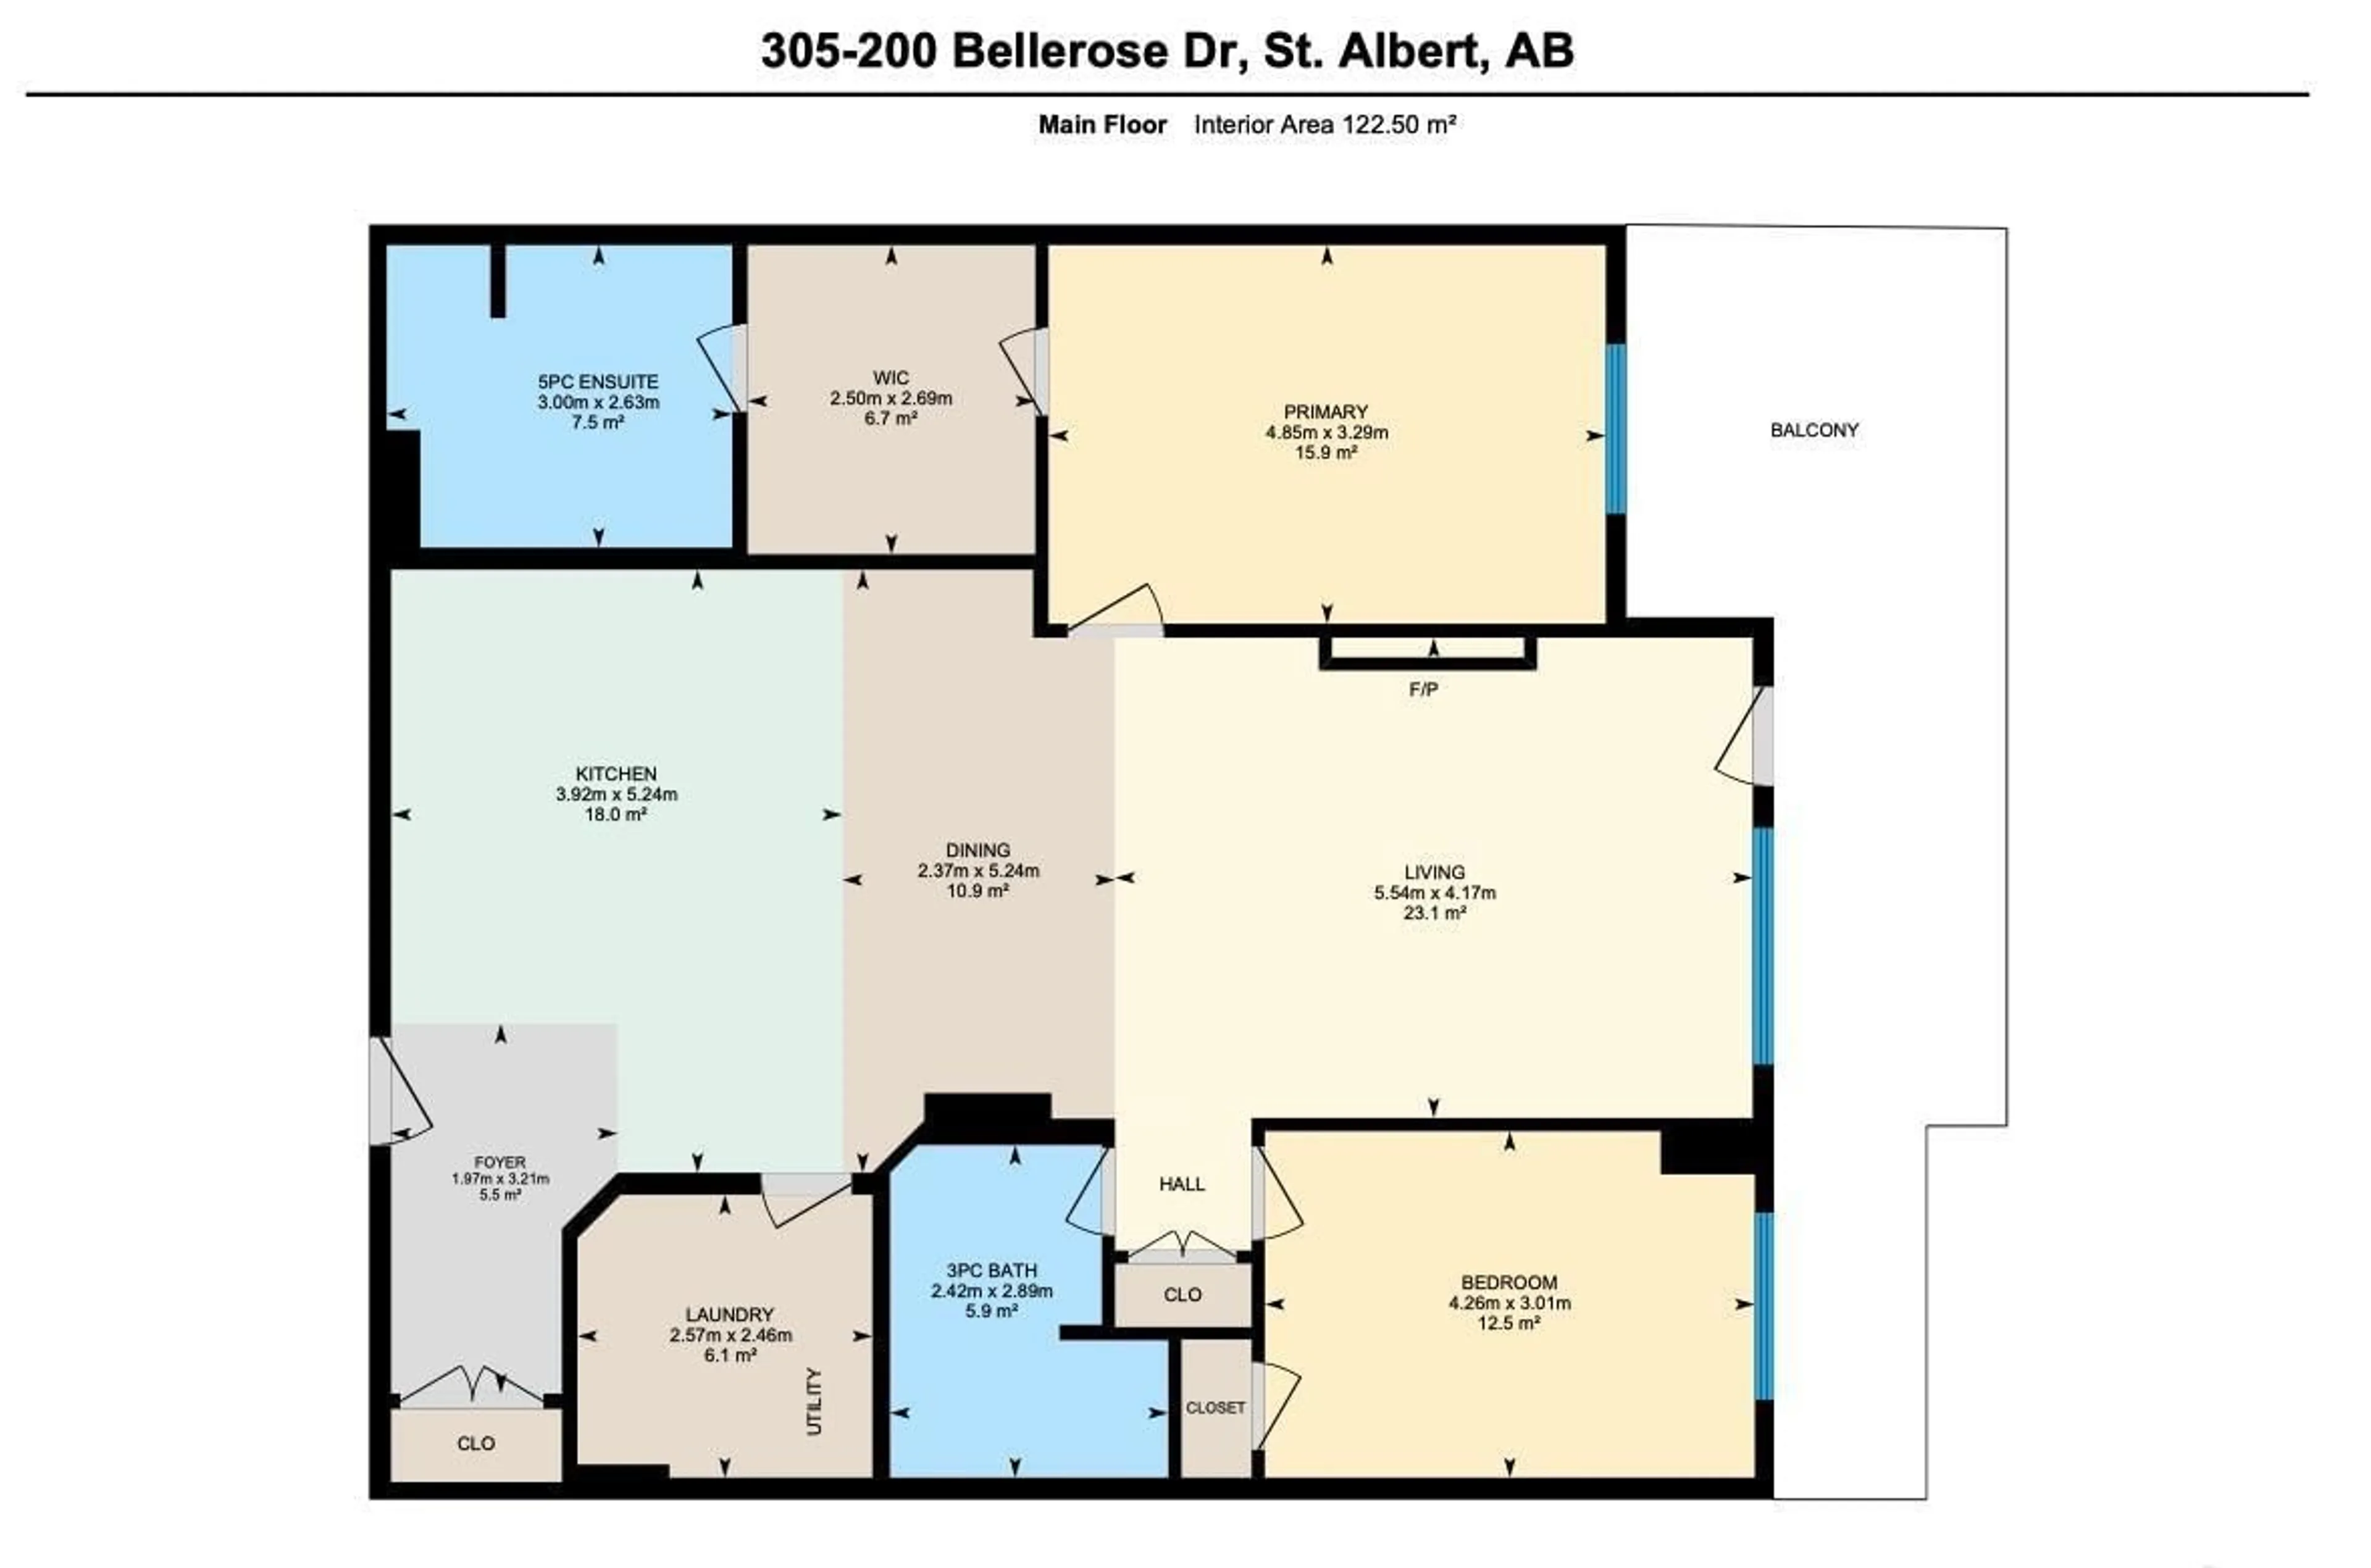 Floor plan for #305 200 BELLEROSE DR, St. Albert Alberta T8N7P7